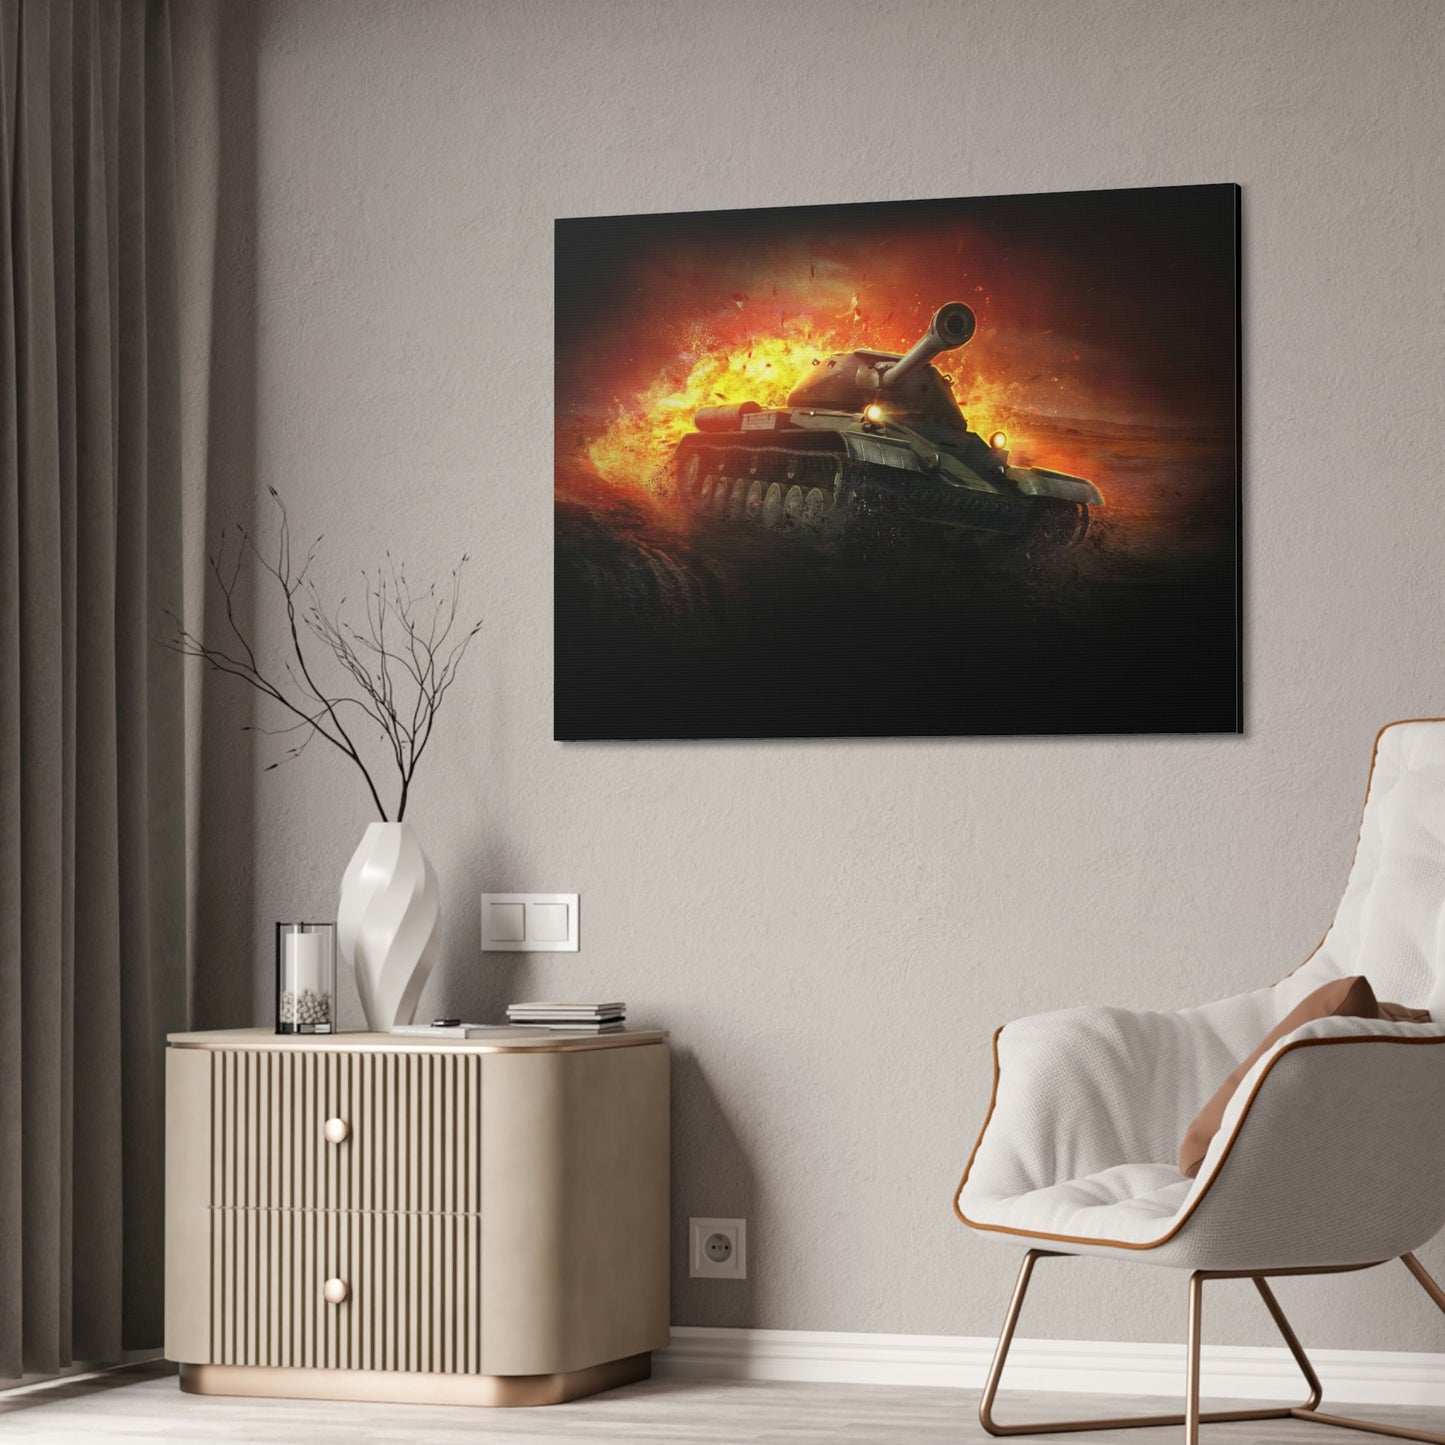 Legendary Battles: Framed Poster Celebrating World of Tanks Heroes